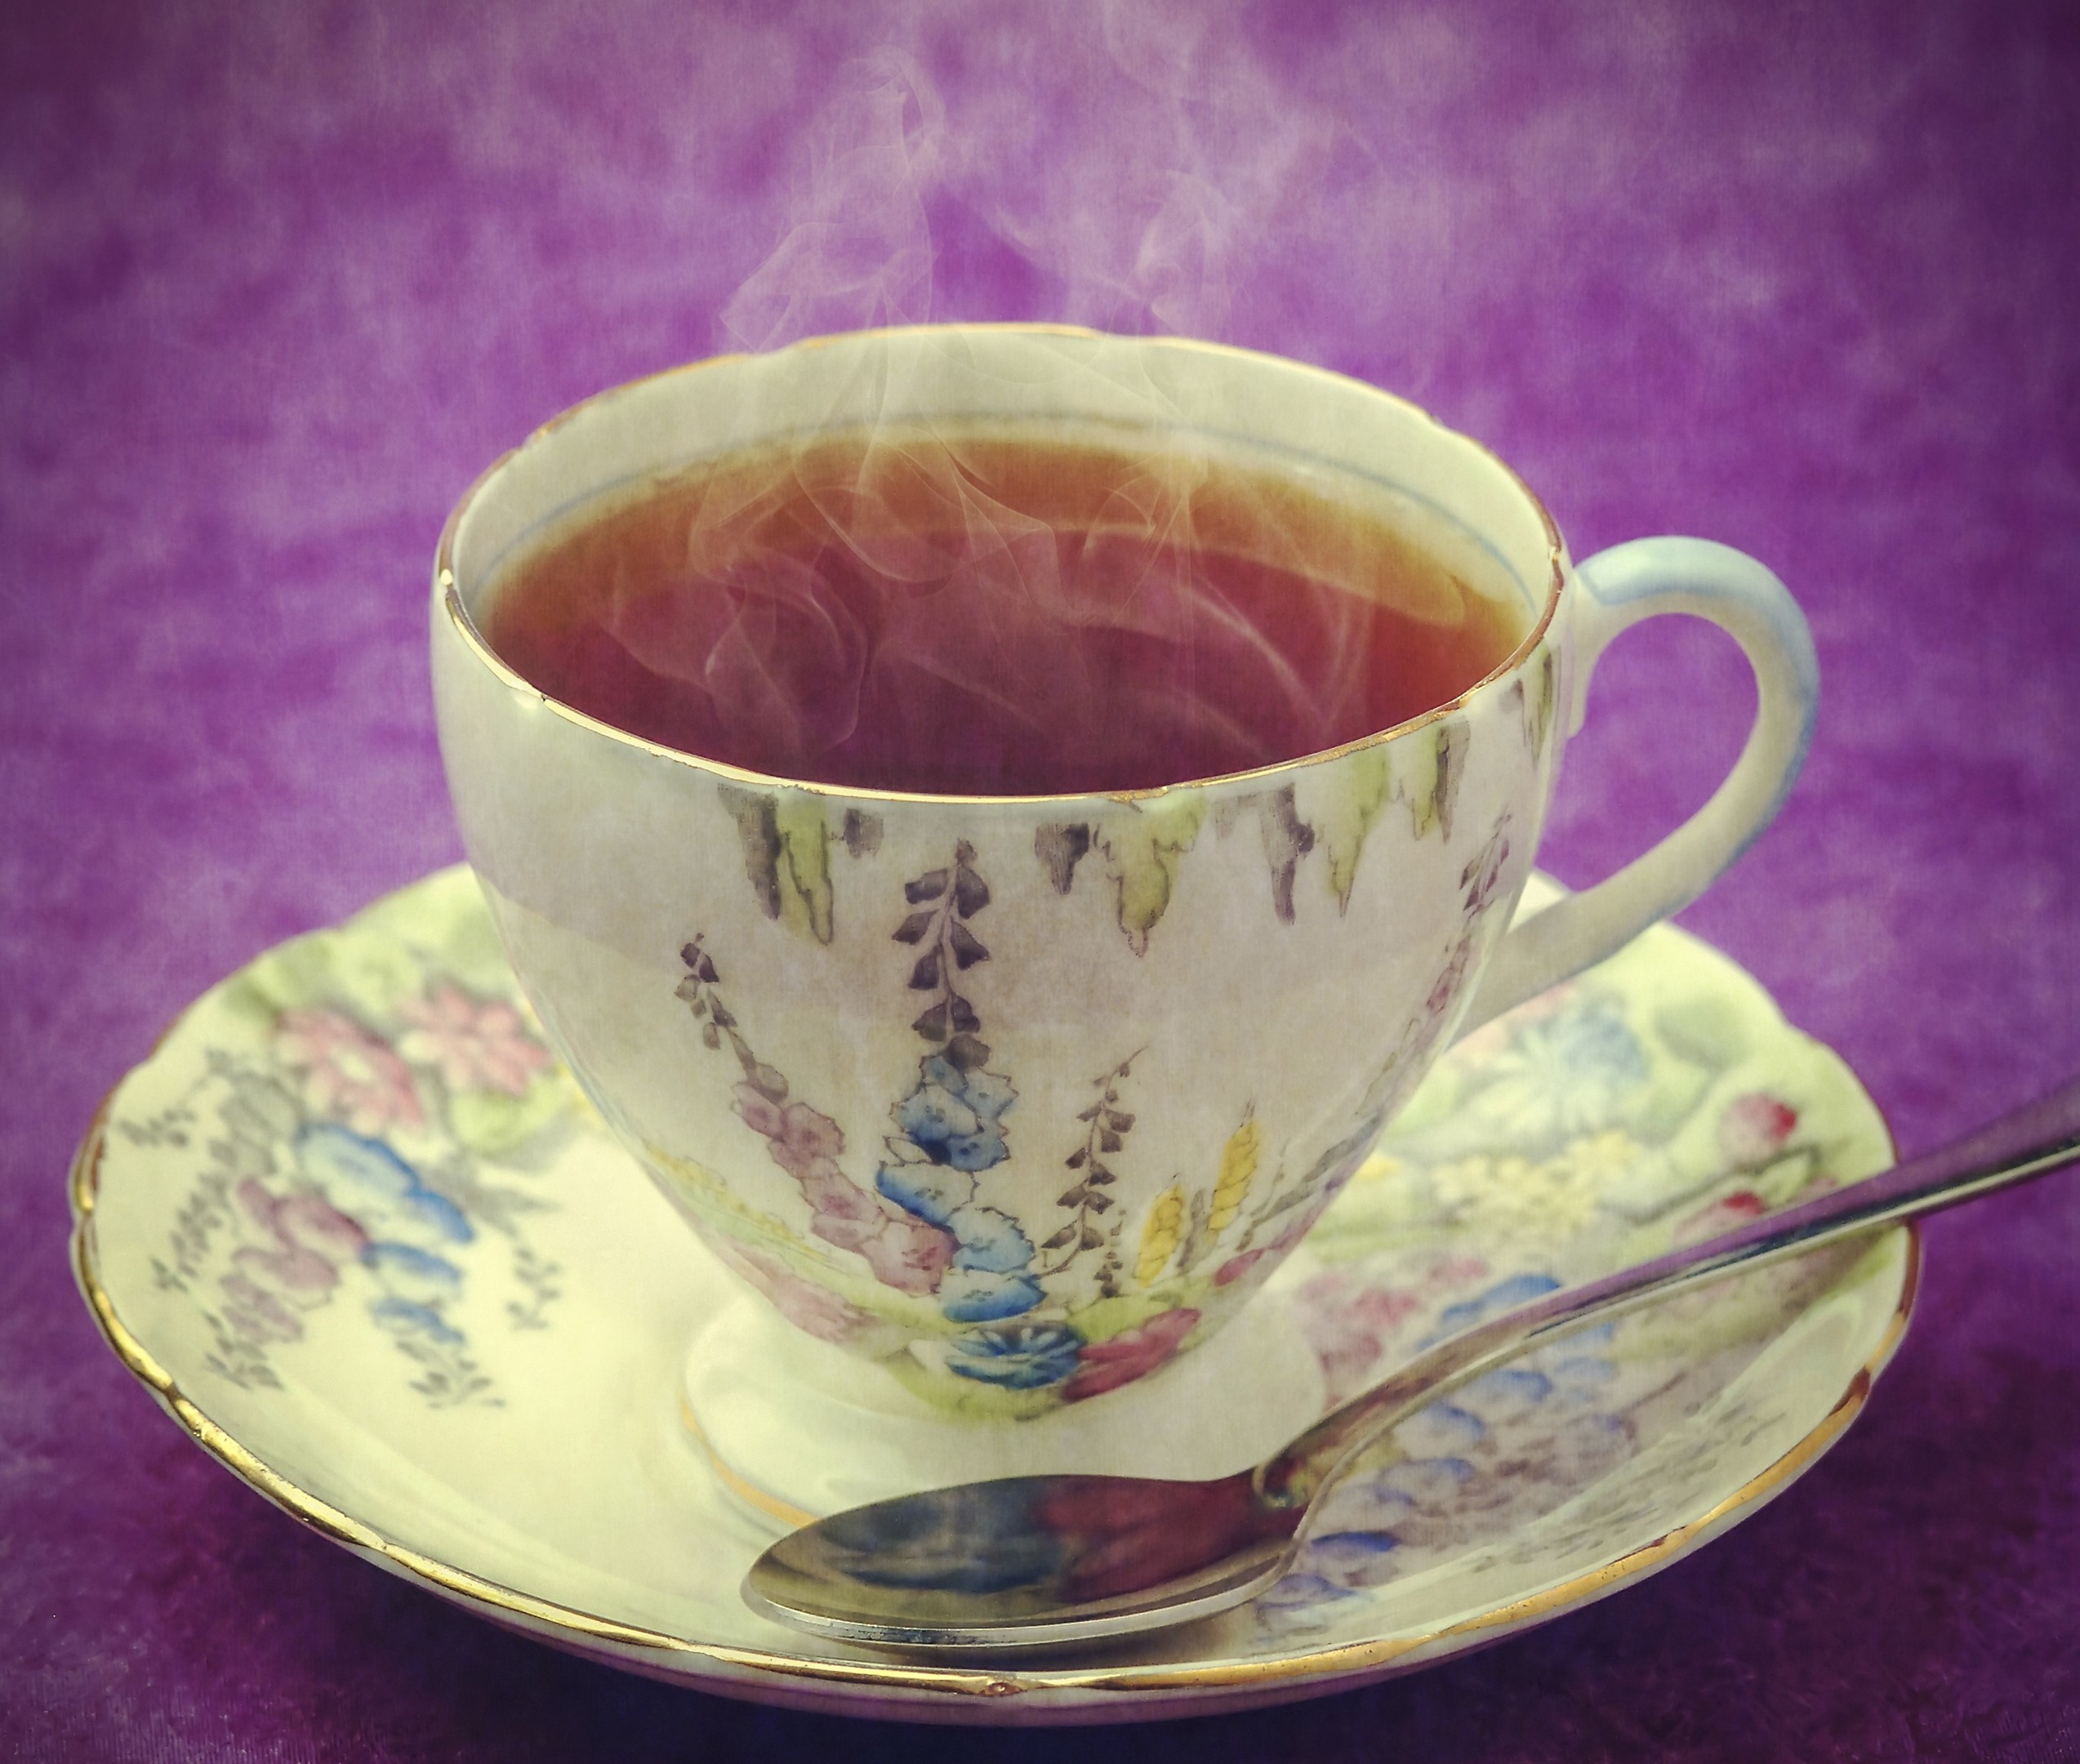 Vintage cup of tea